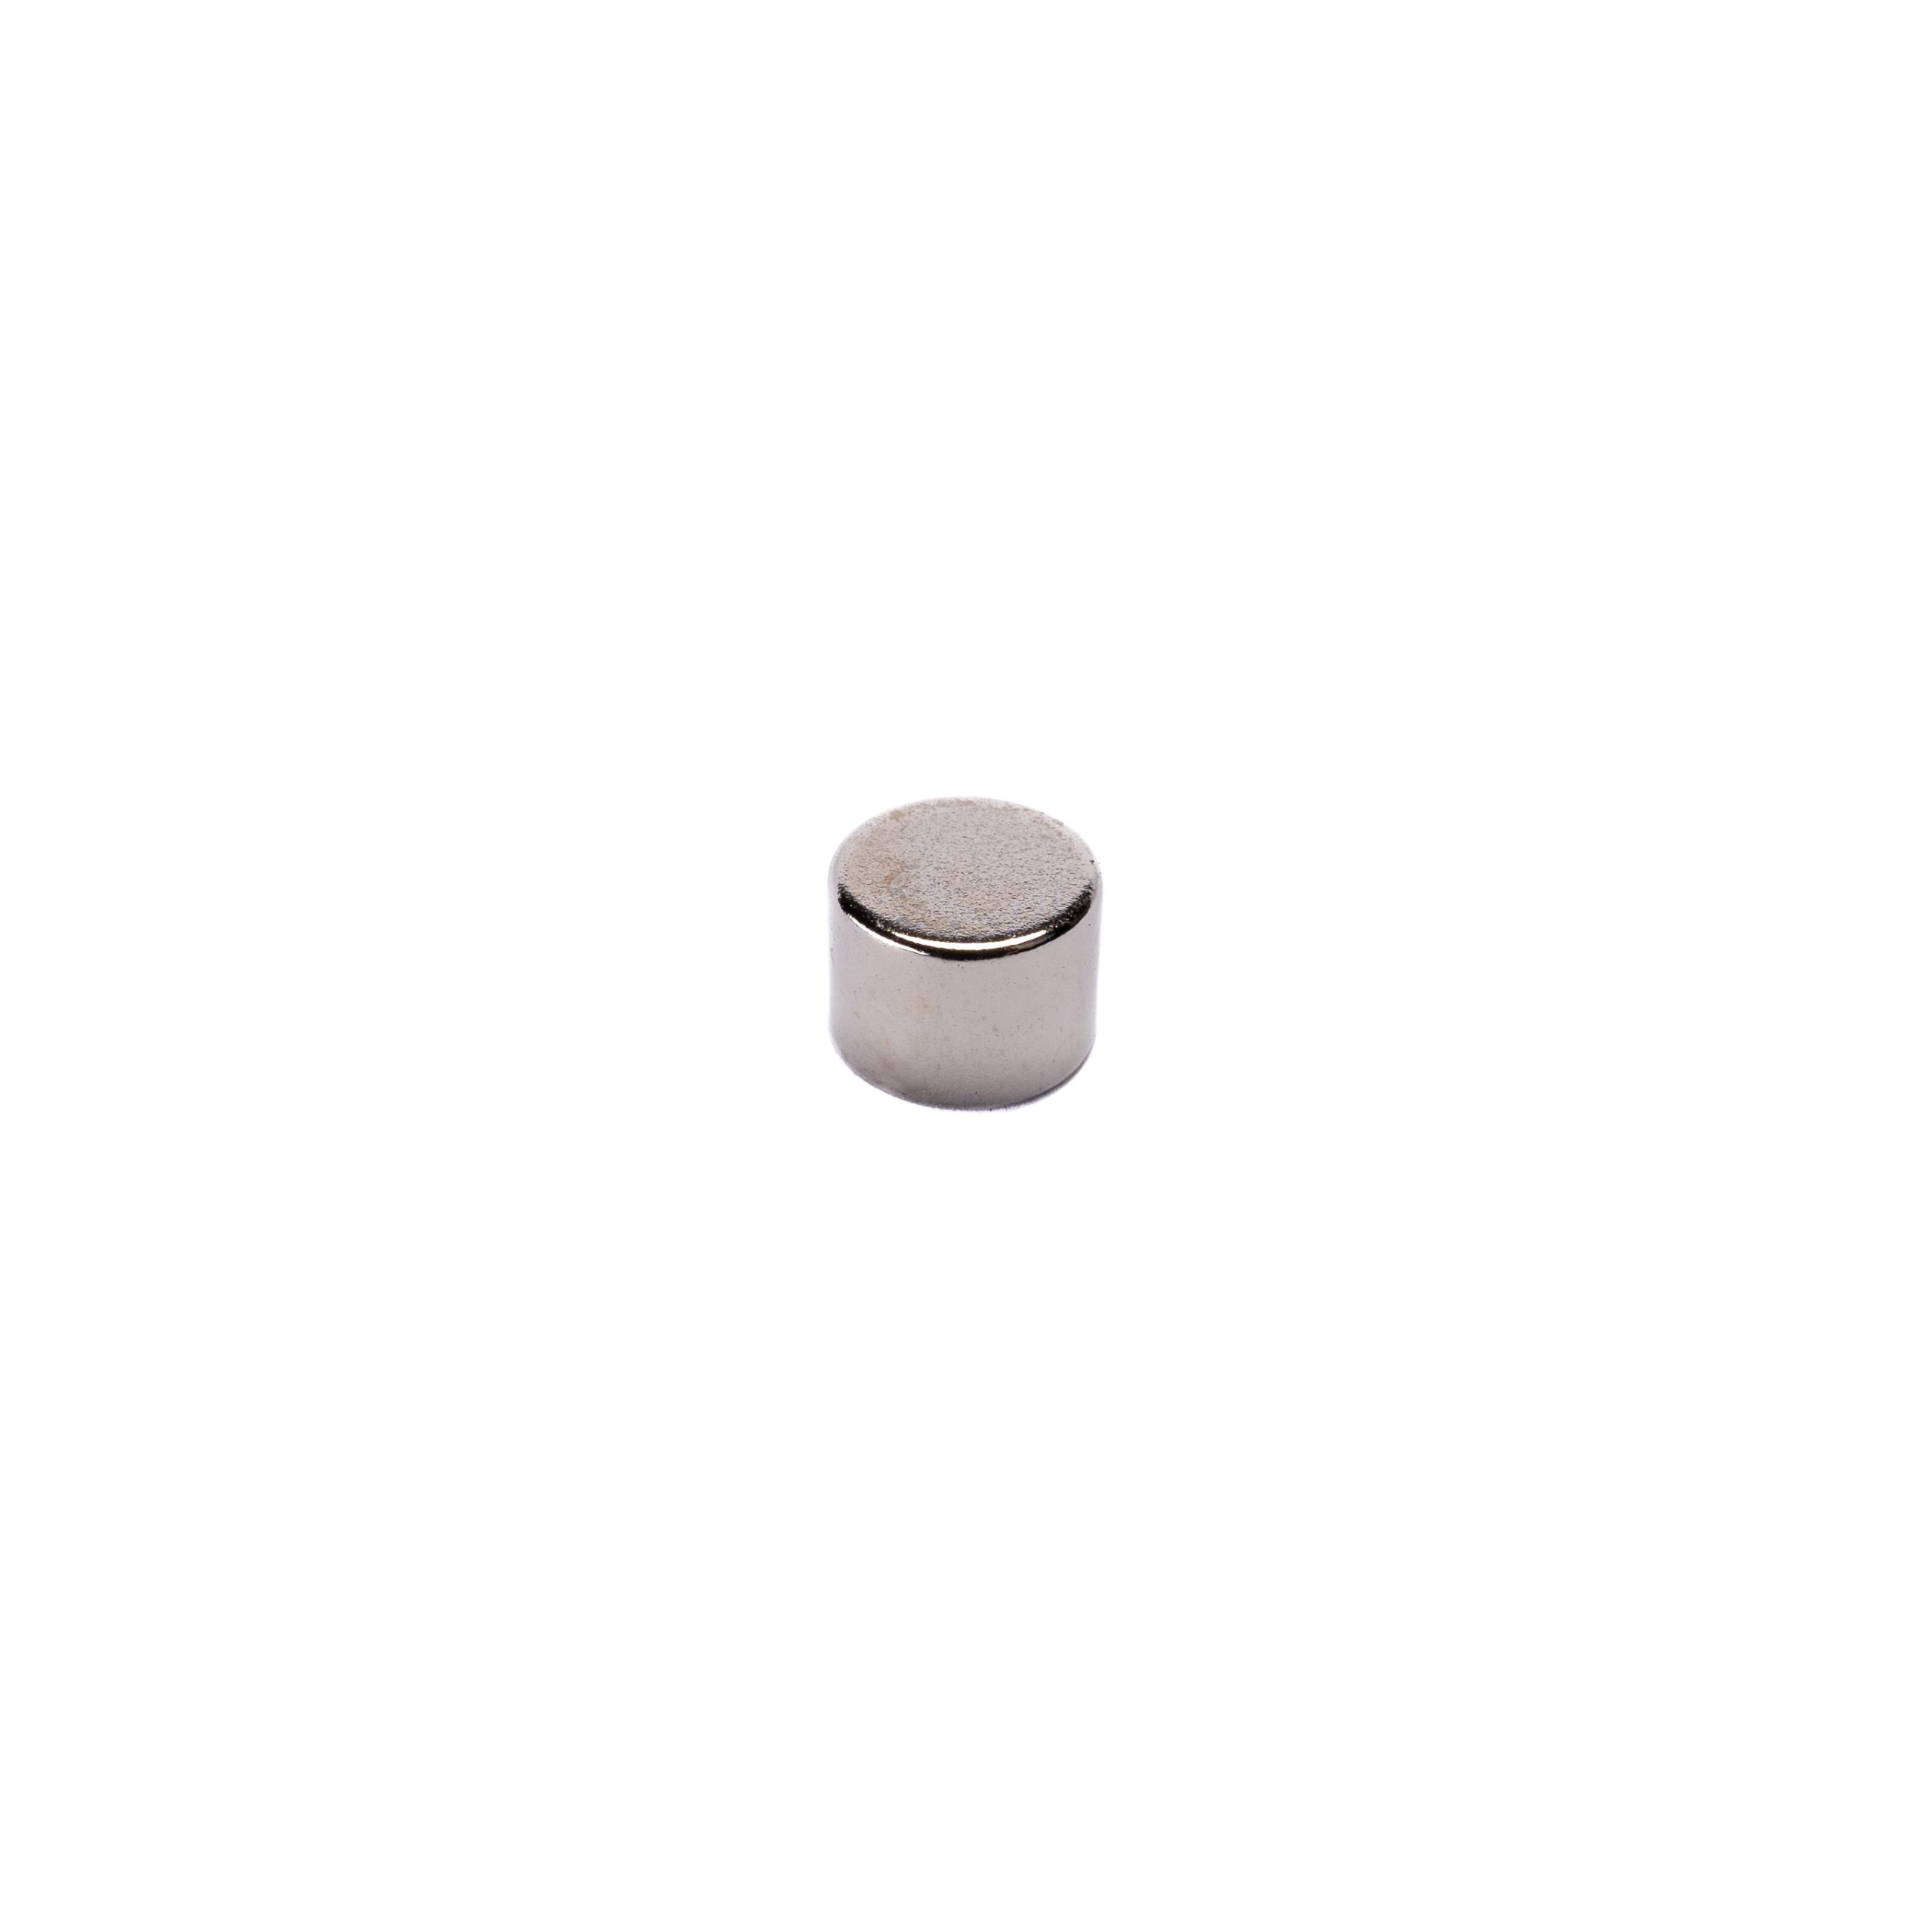 Neodímium korong mágnes  8x6mm